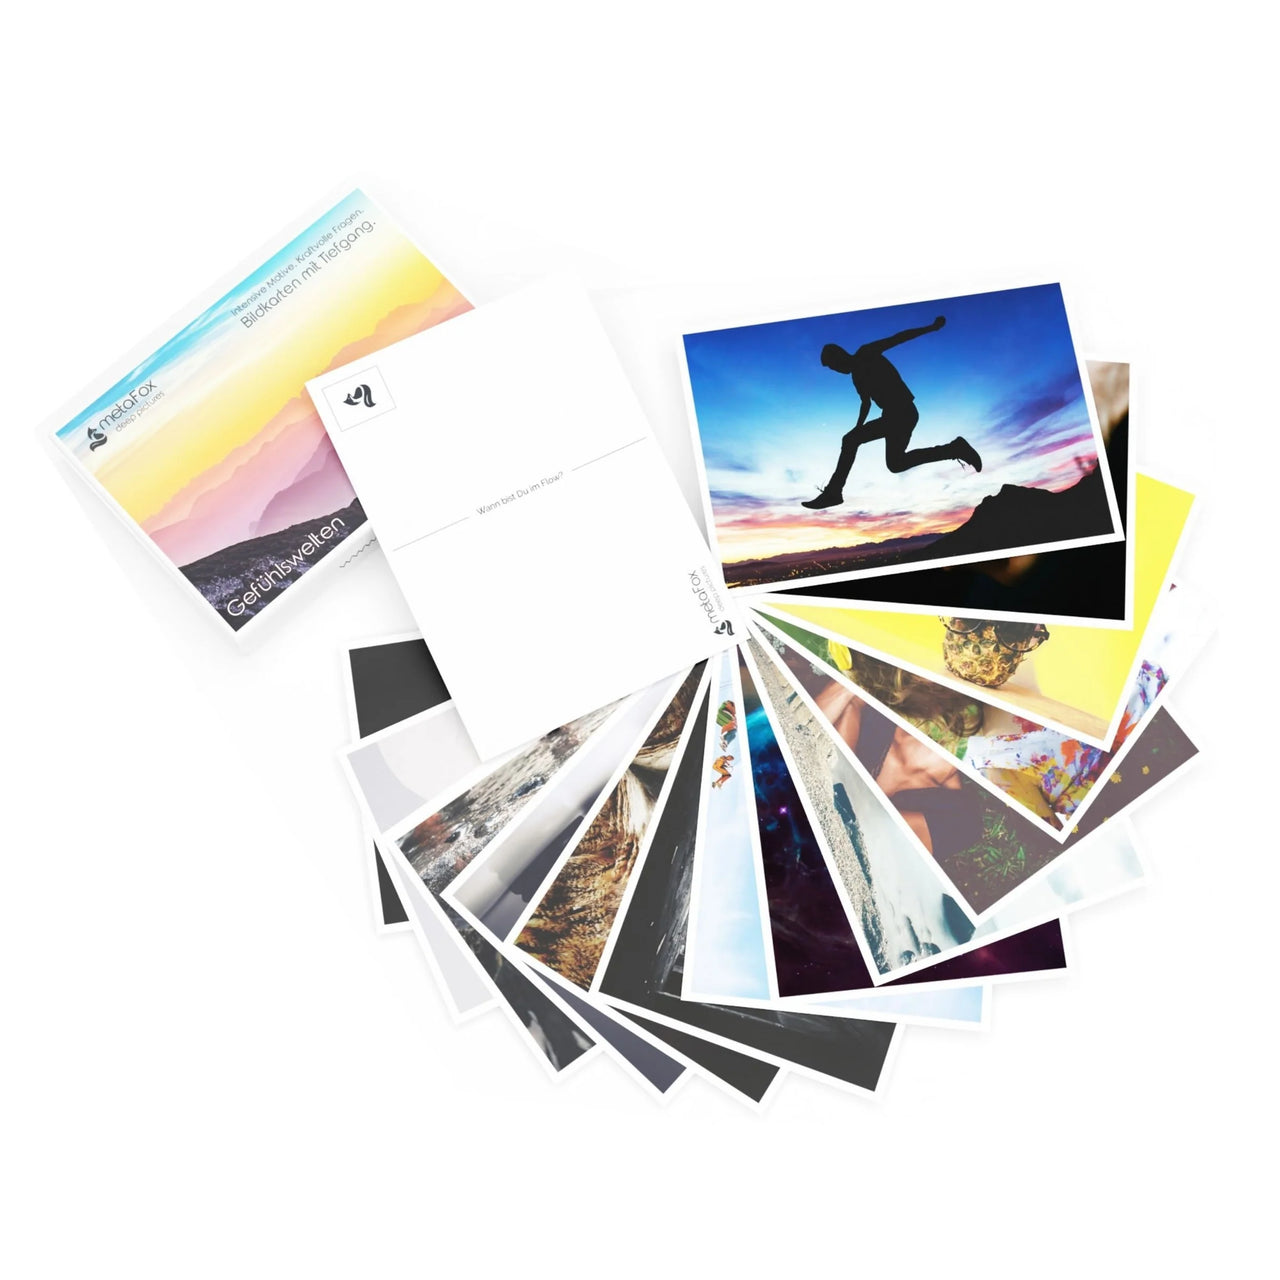 metaFox - cartoline fotografiche di "mondi emozionali" con immagini profonde